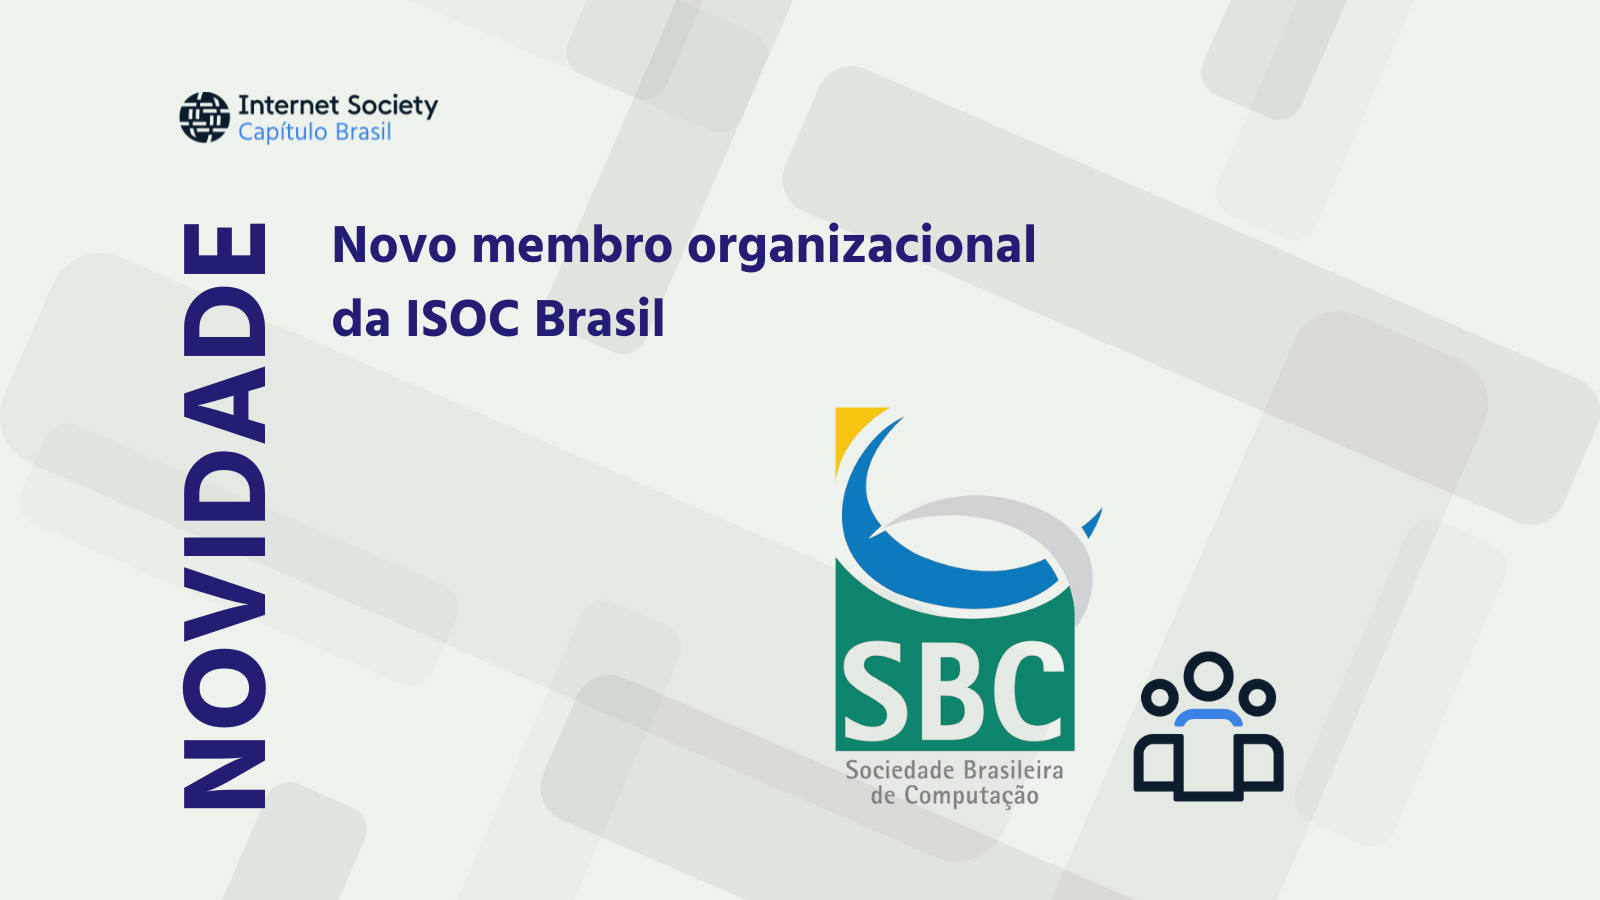 Novo Membro organizacional | Sociedade Brasileira de Computação (SBC)